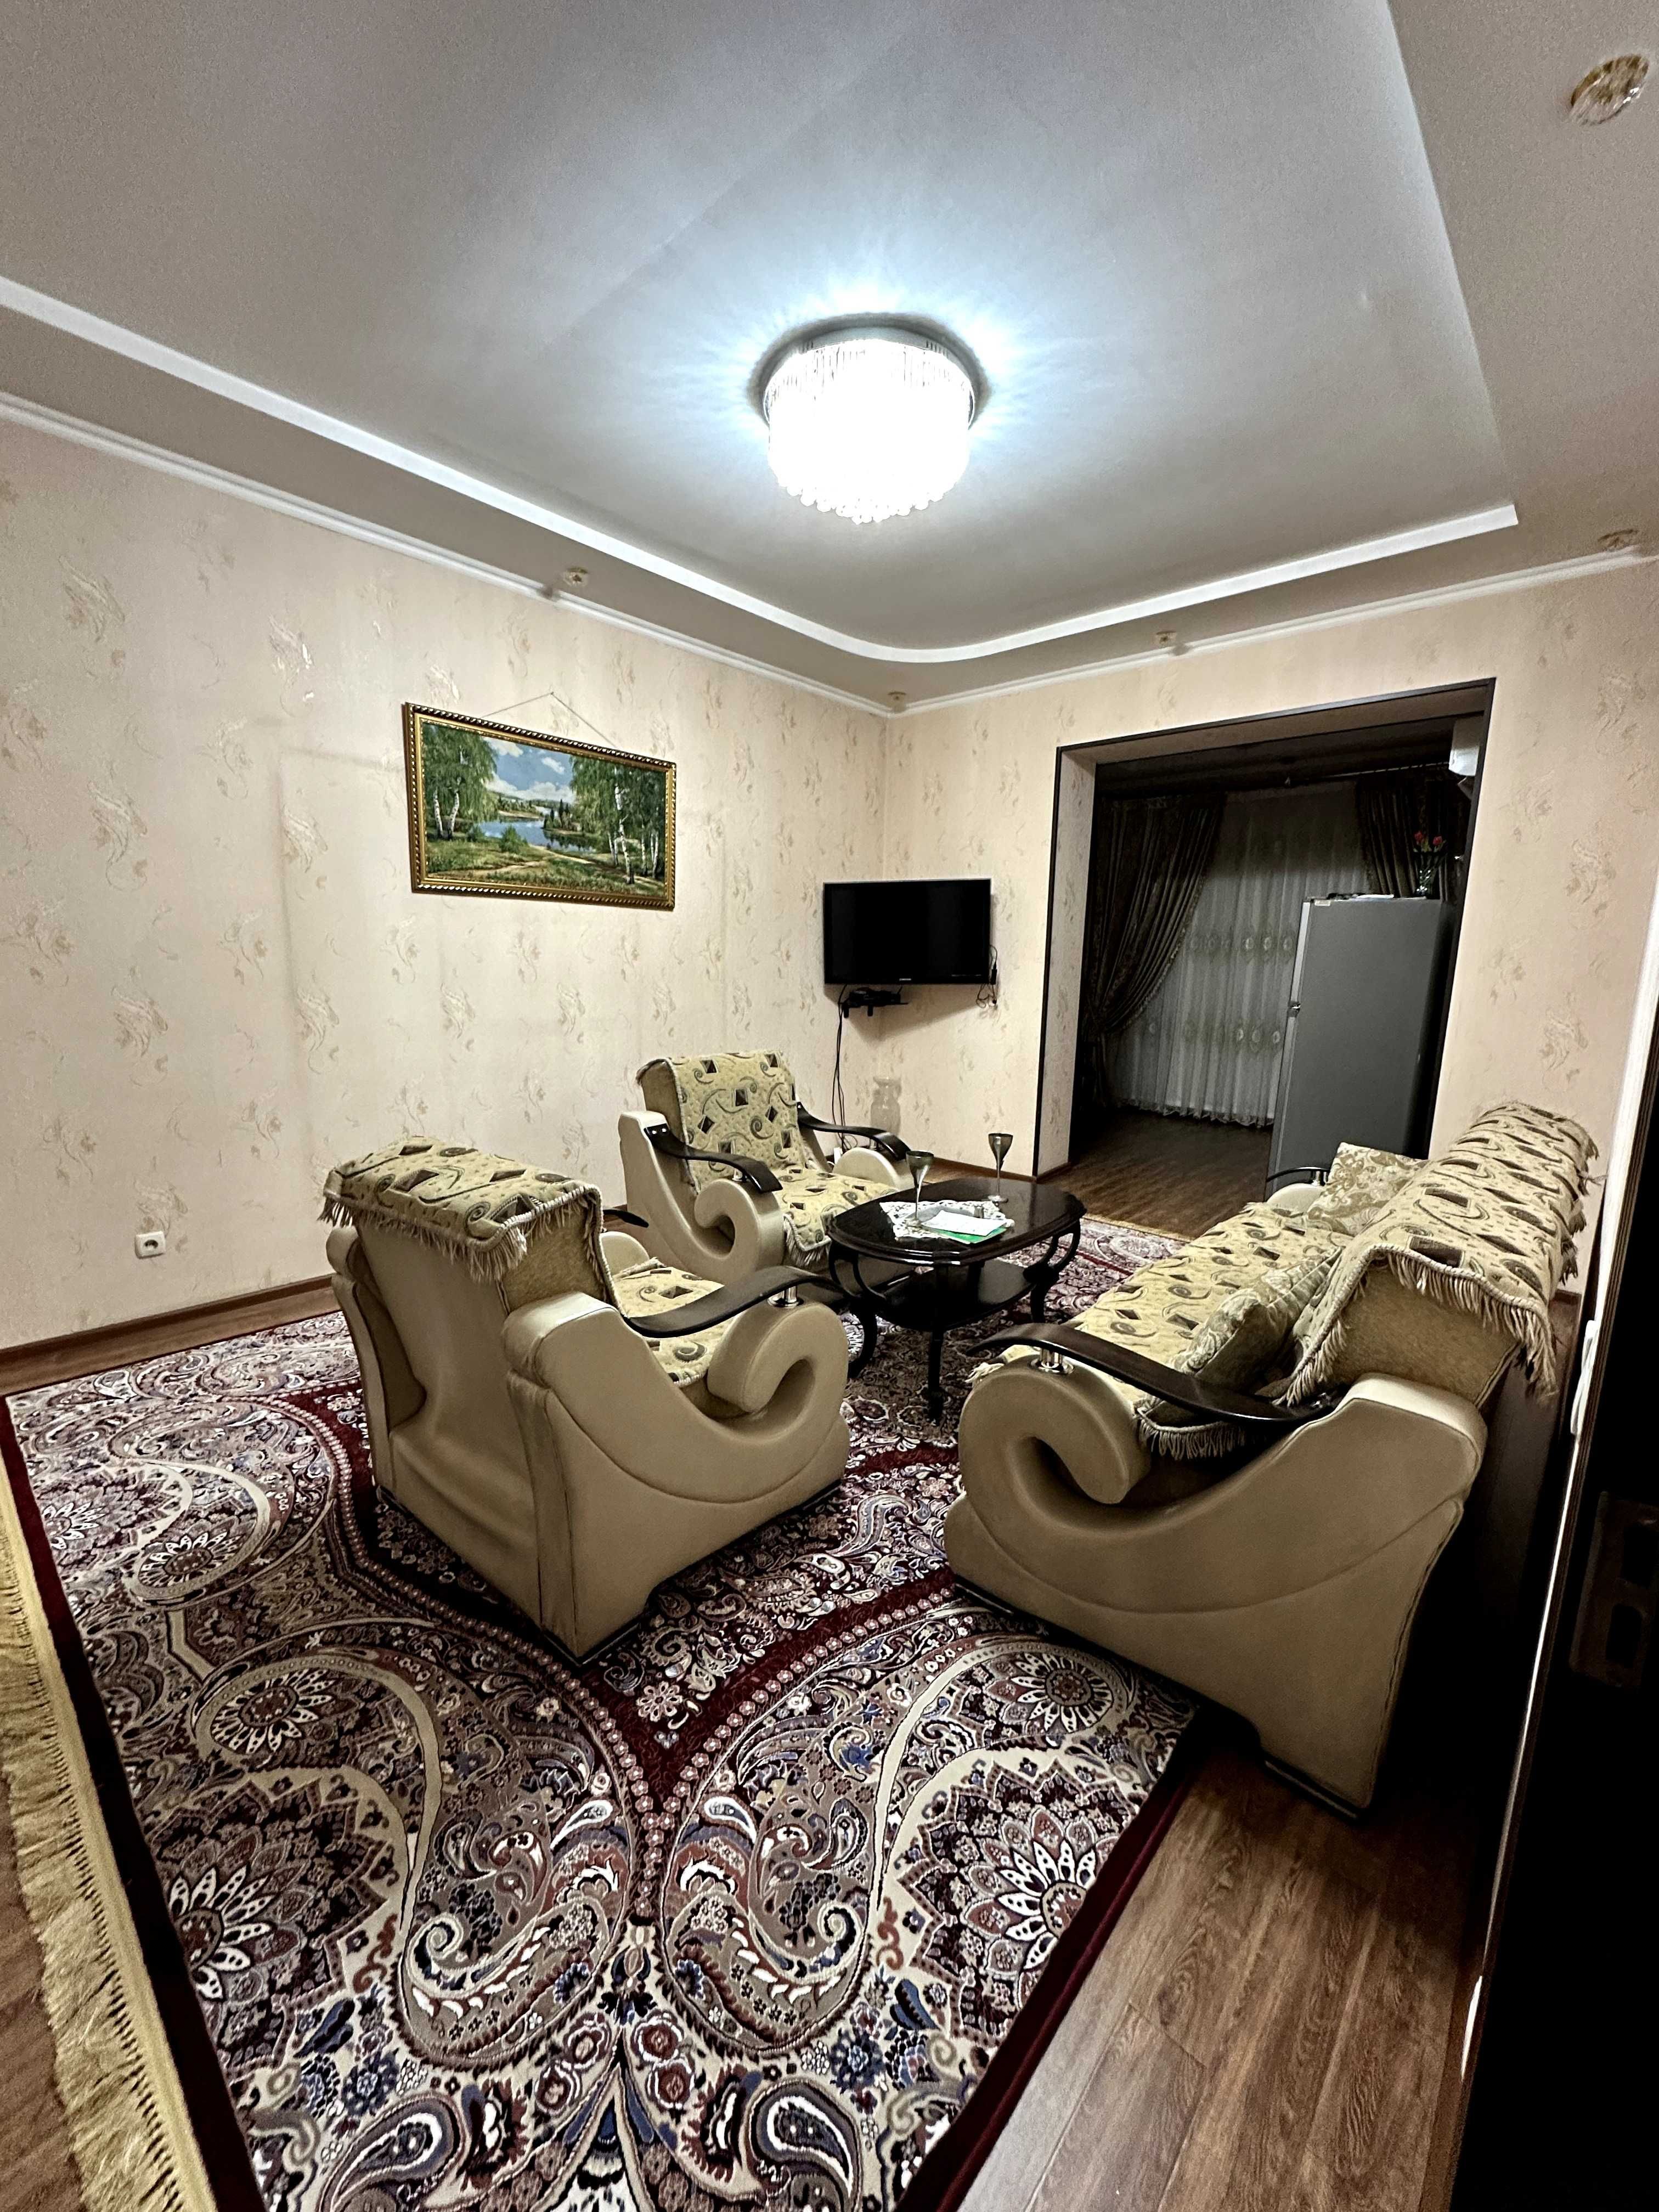 Аренда квартиры в центре, (рядом Tashkent city) 3х кв., 104 кв.м.